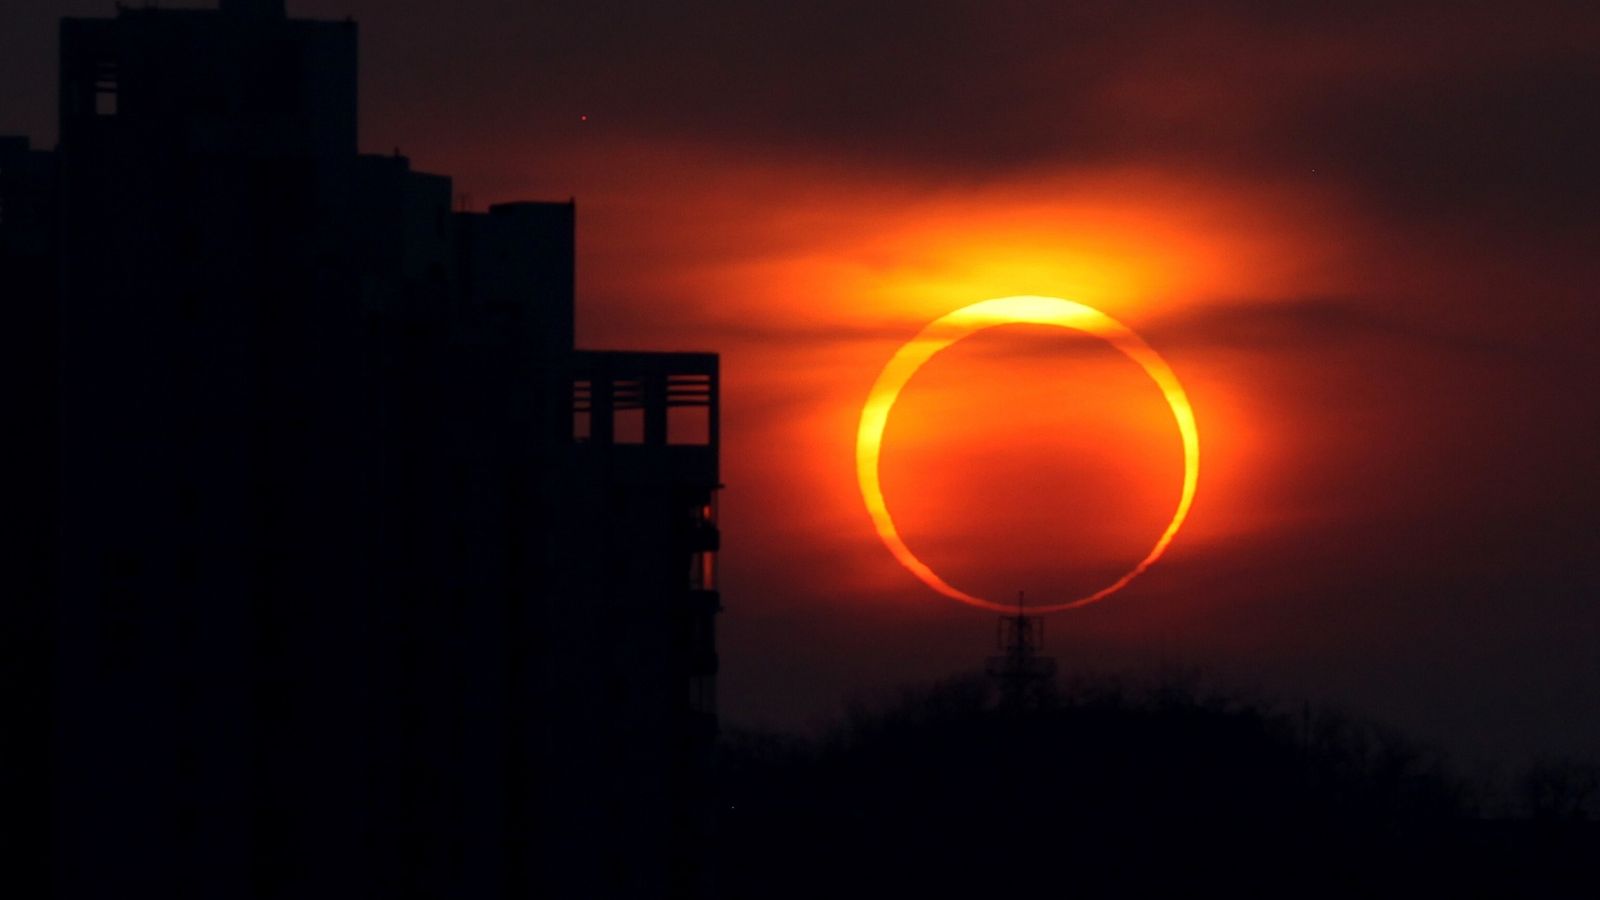 eclipse en yucatan, eclipse solar